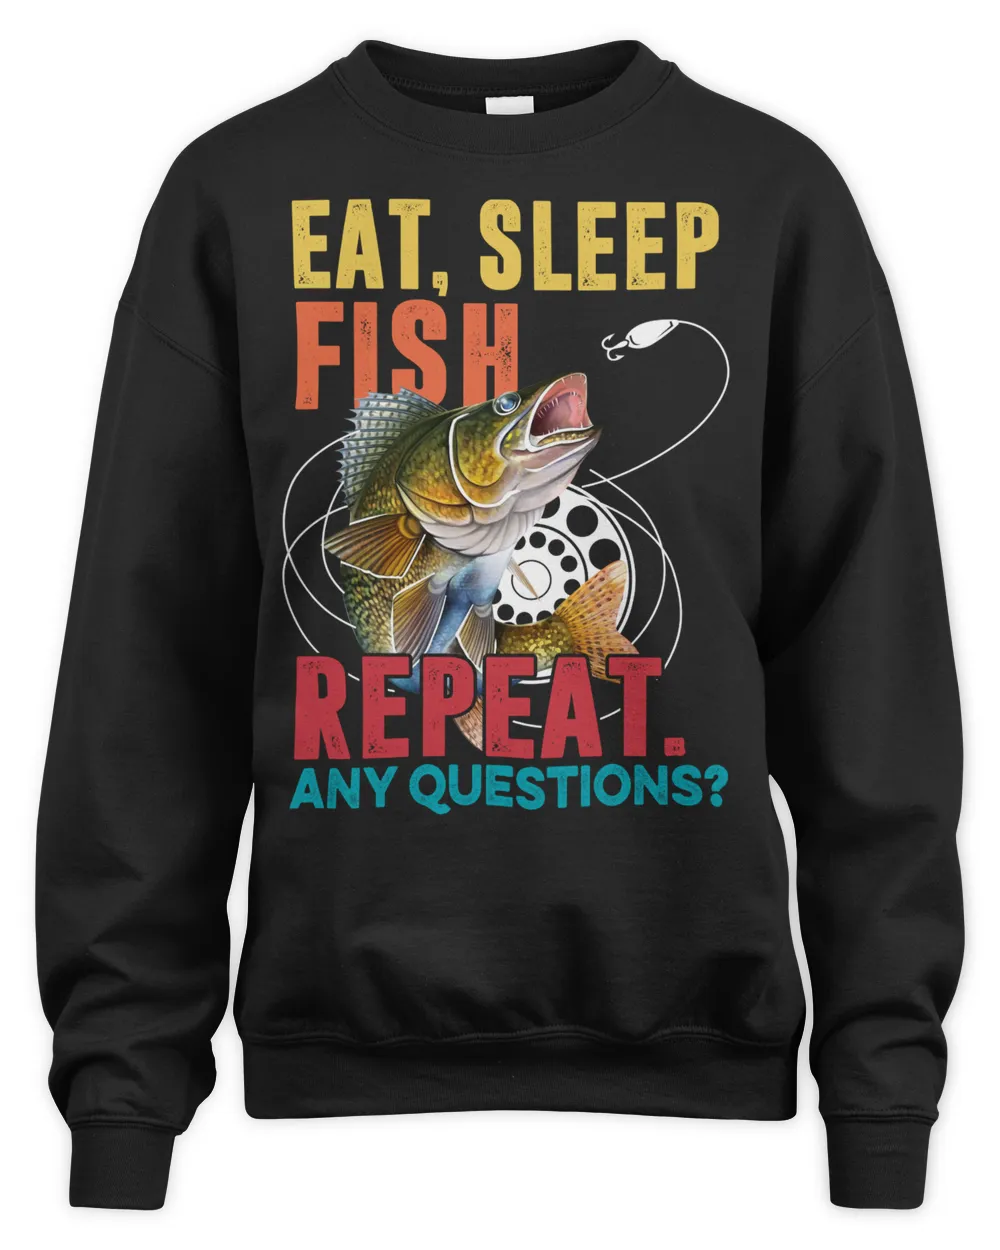 EAT, SLEEP, FISH... REPEAT walleye